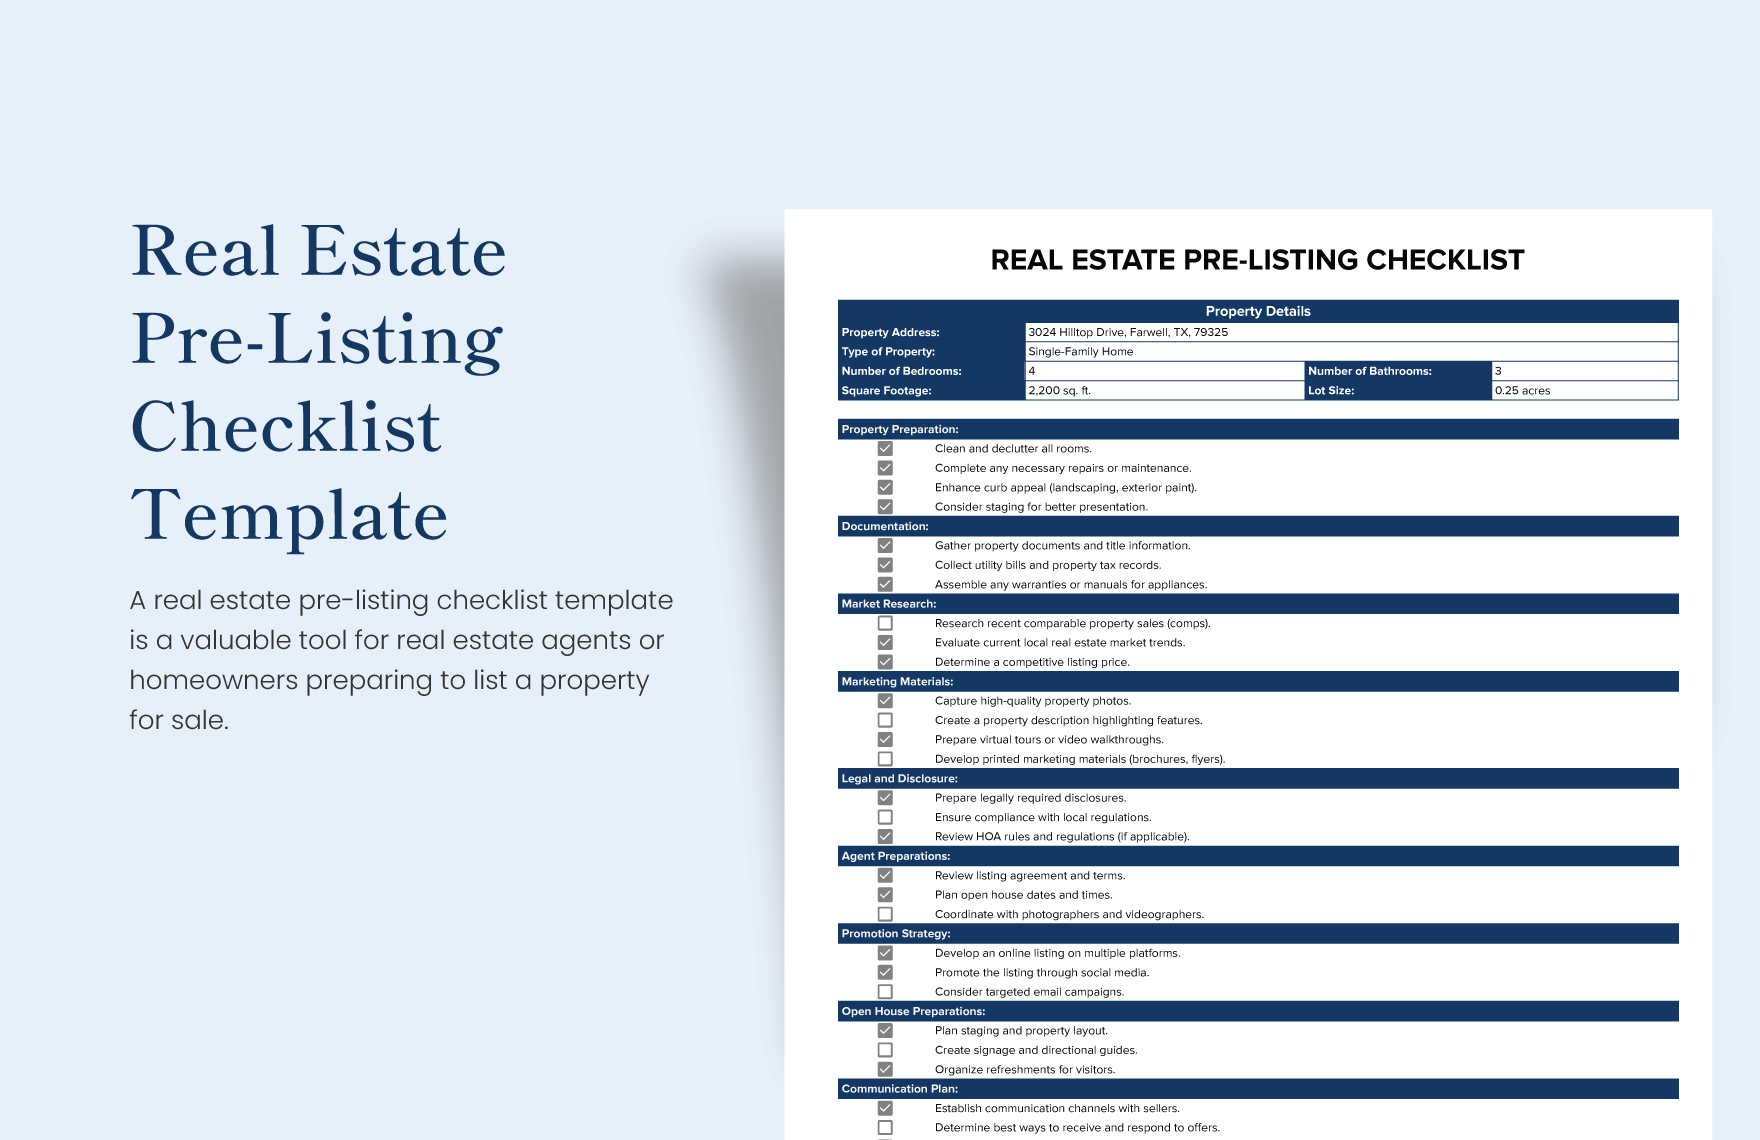 Real Estate Pre-Listing Checklist Template